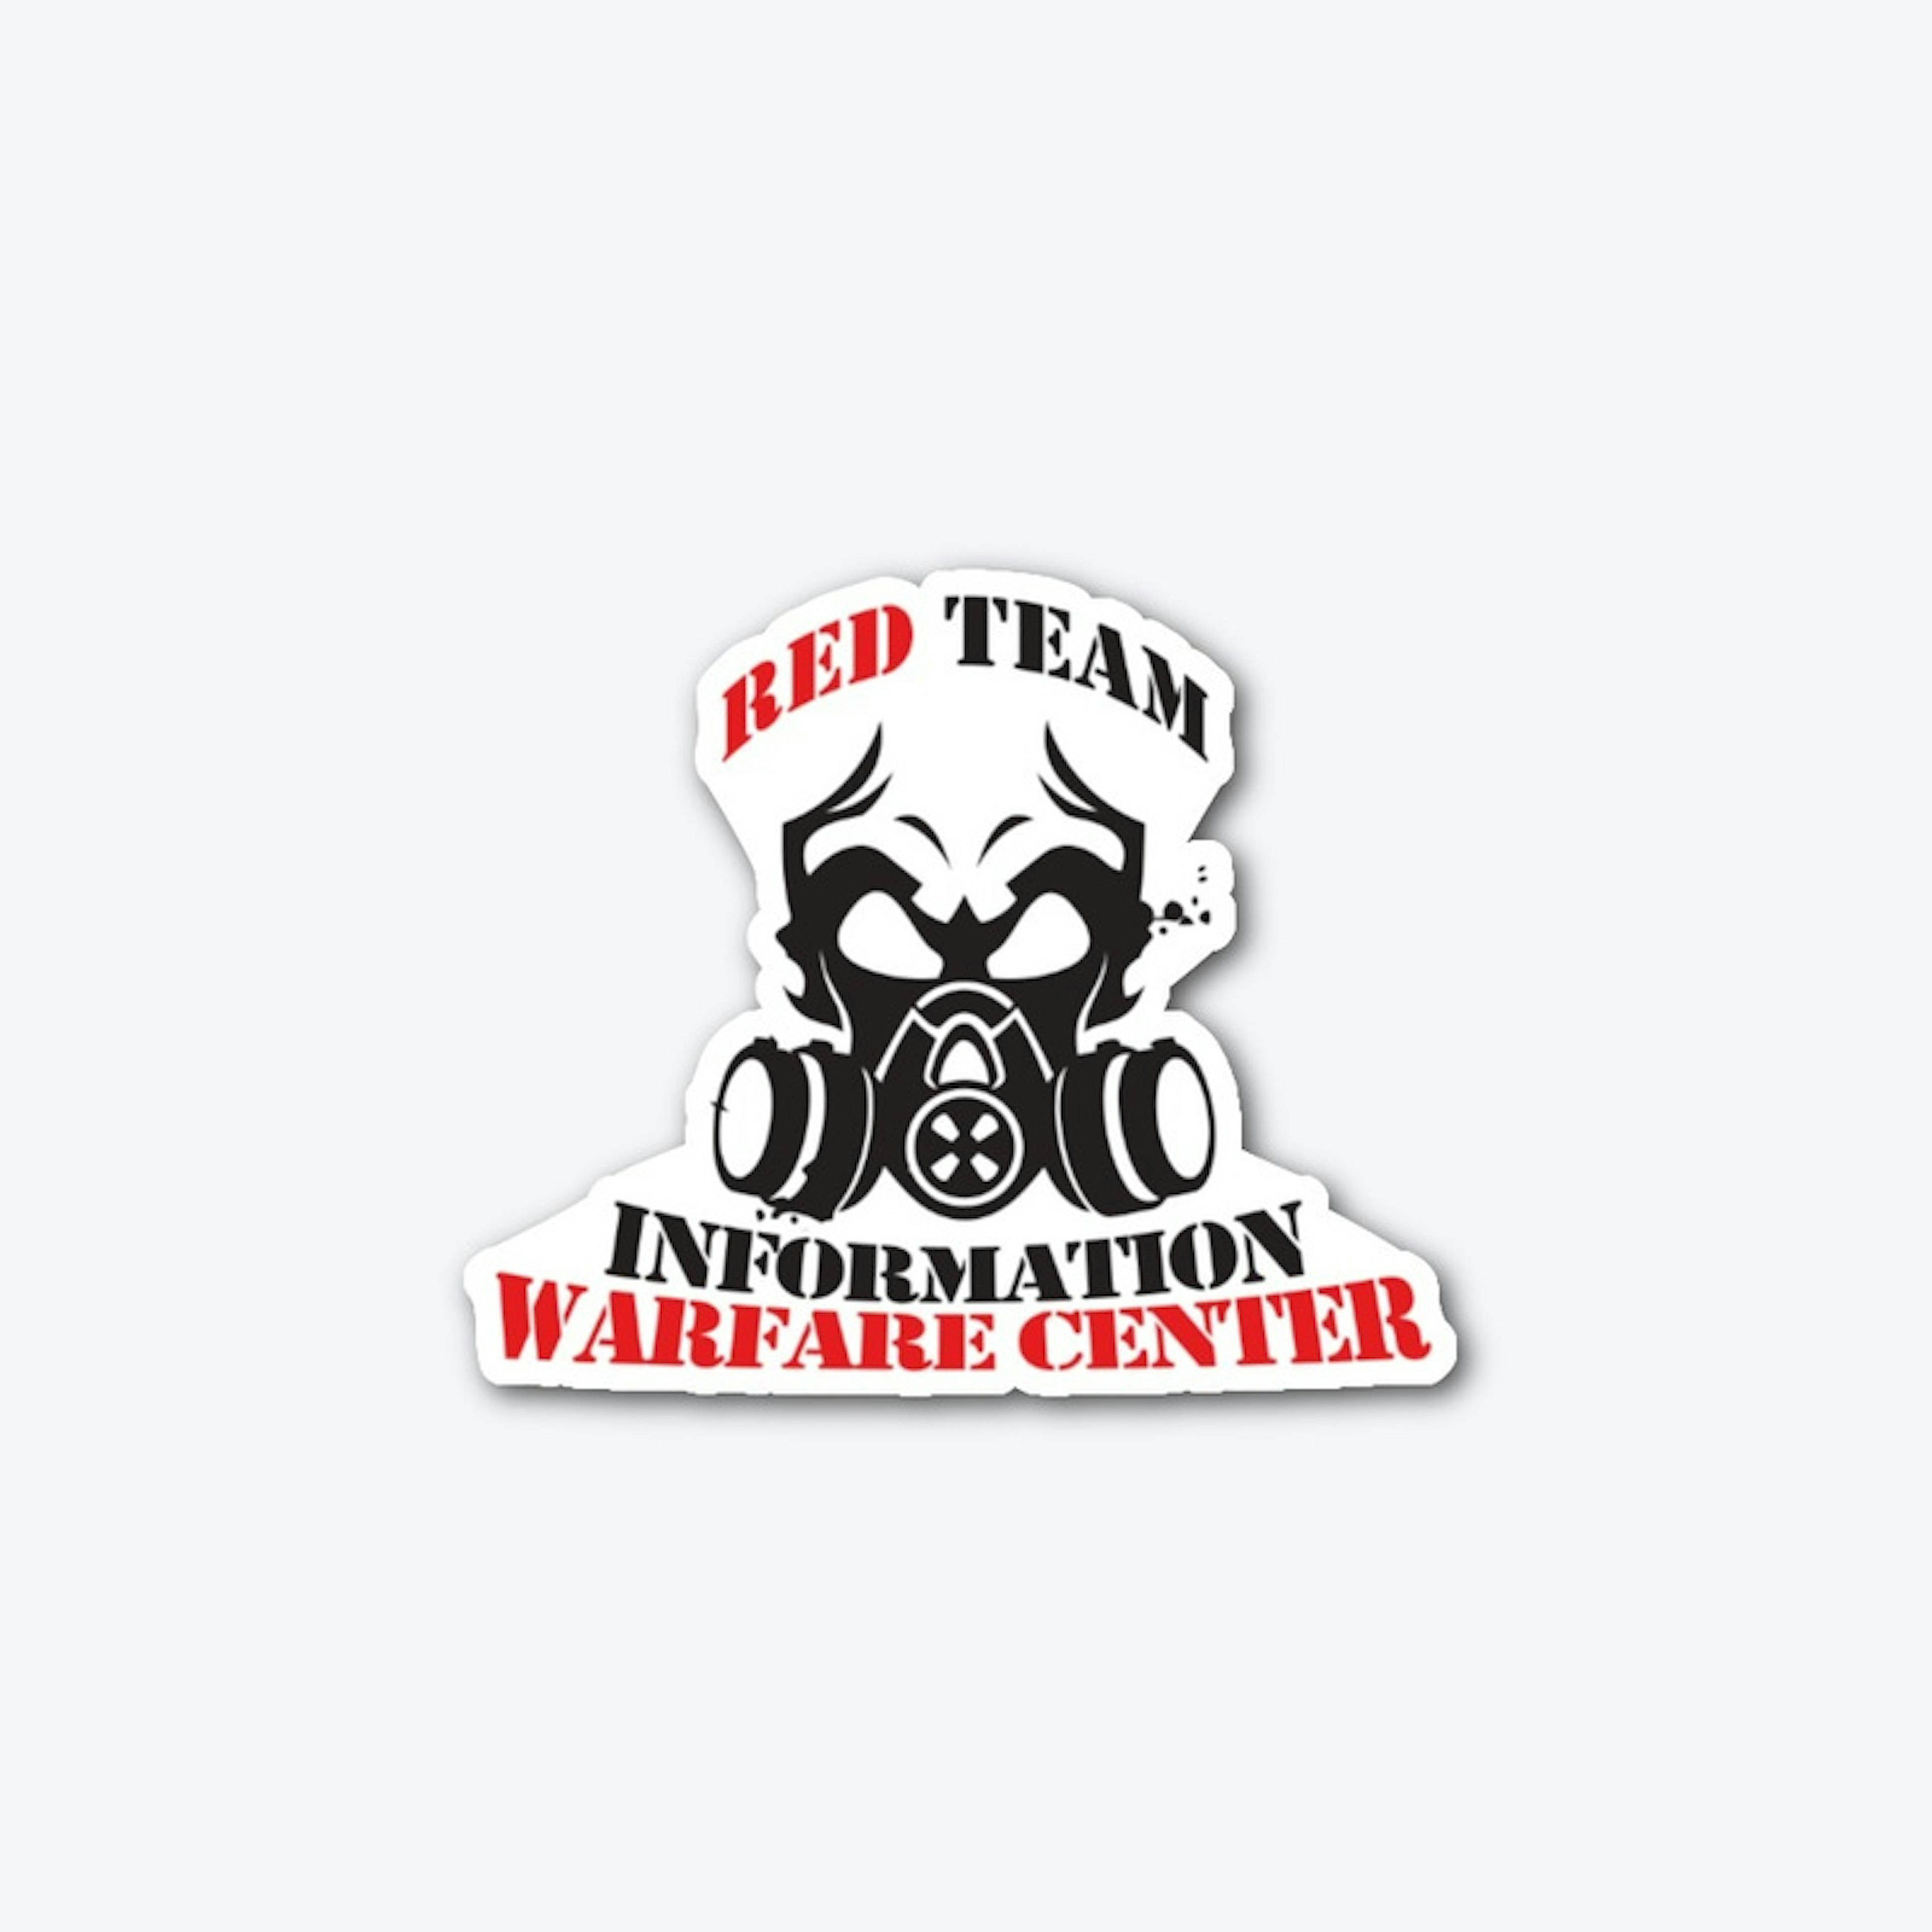 Information Warfare Center Red Team